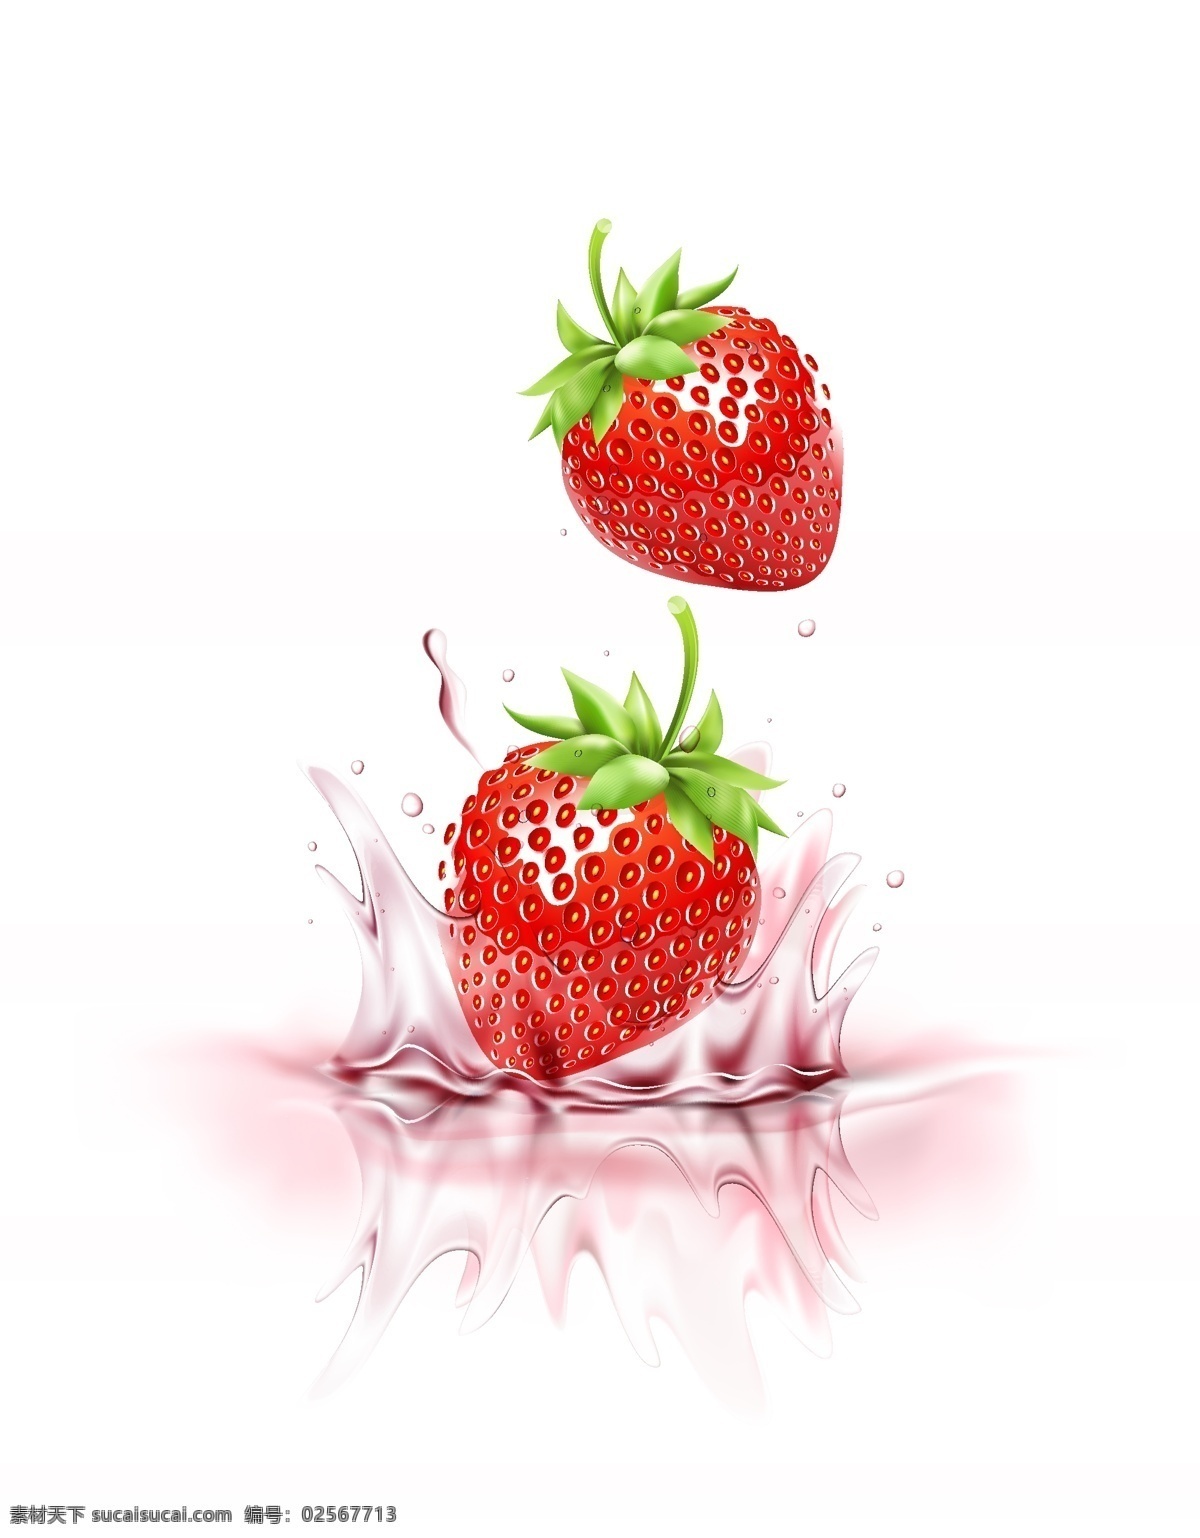 草莓矢量素材 草莓矢量 草莓素材 草莓 红草莓矢量 红草莓素材 红草莓 草莓背景 共享设计矢量 生物世界 水果